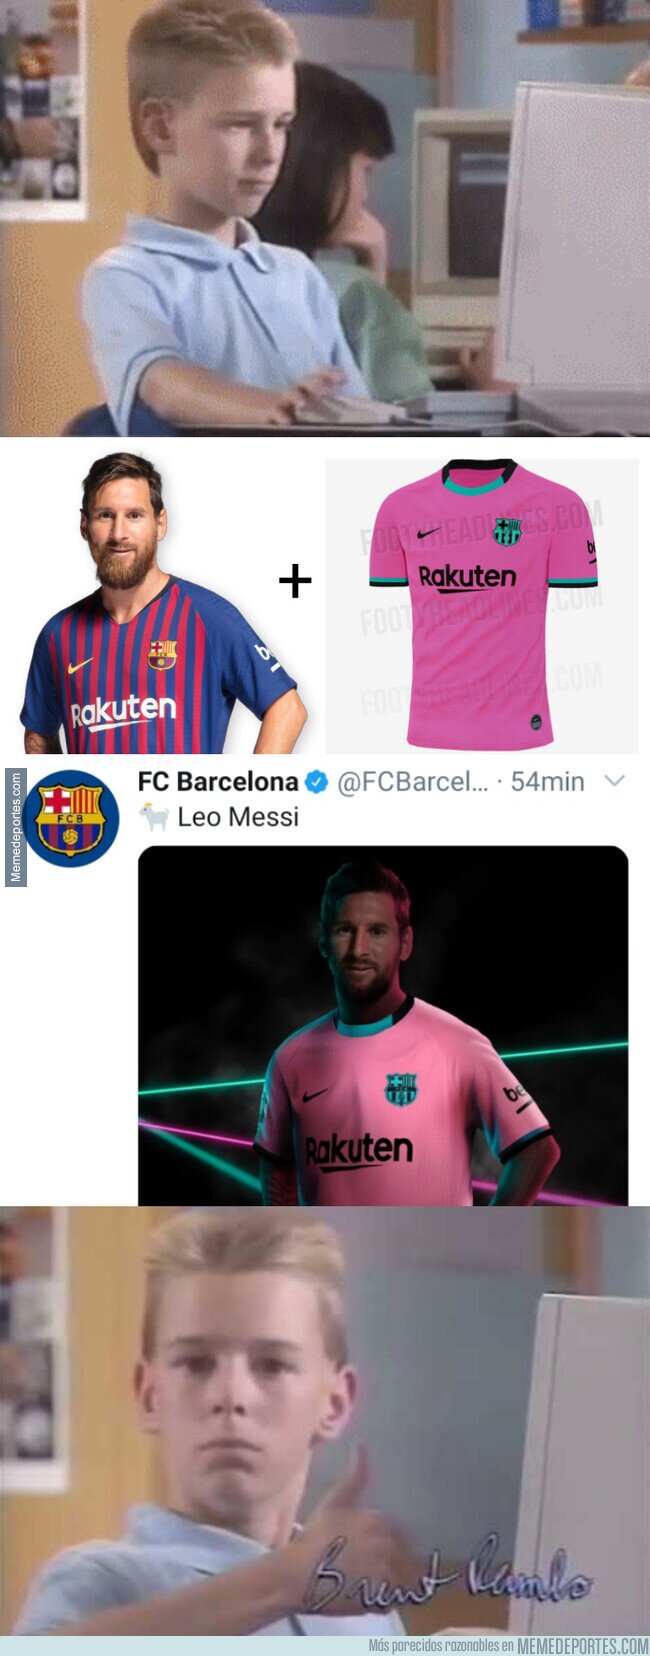 1115181 - Mientras tanto, el encargado de Photoshop del Barça